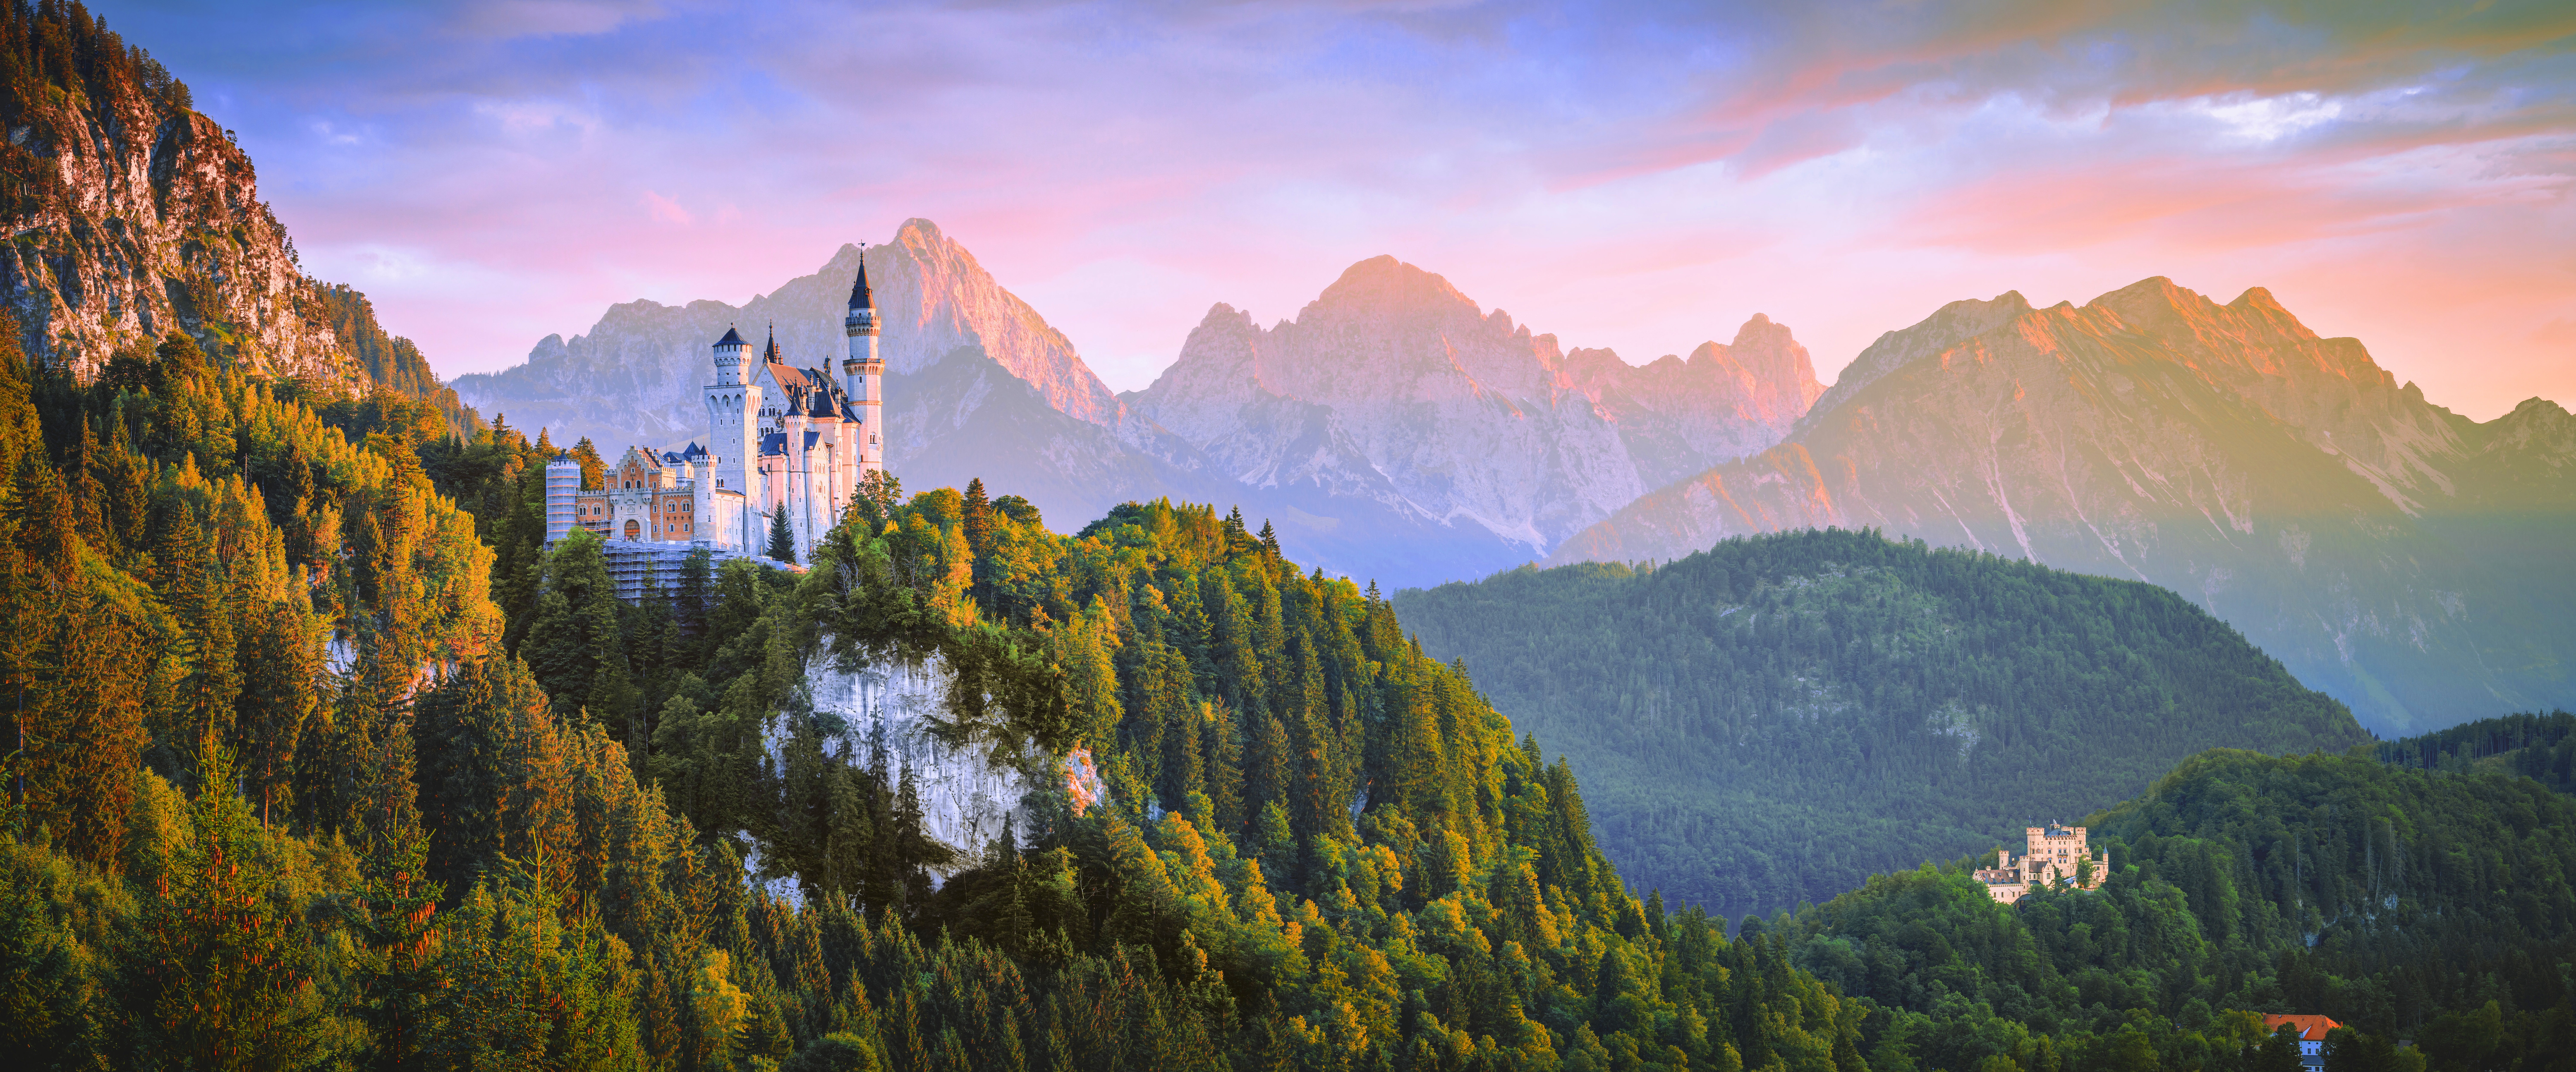 Man Made Neuschwanstein Castle 4k Ultra HD Wallpaper